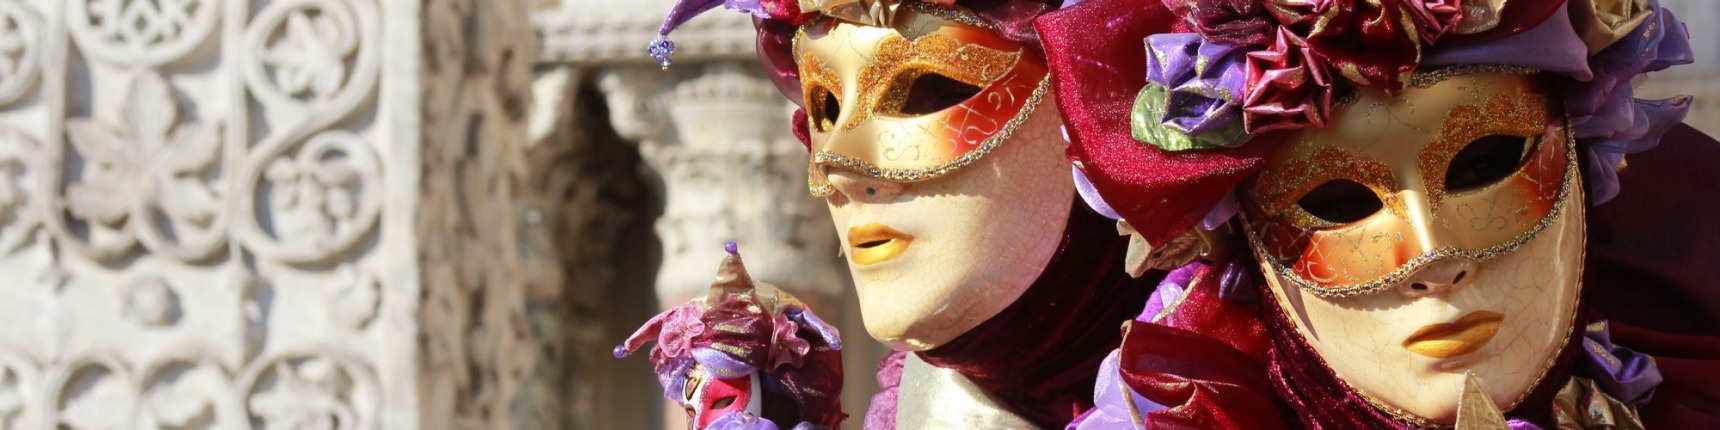 Venice, masks